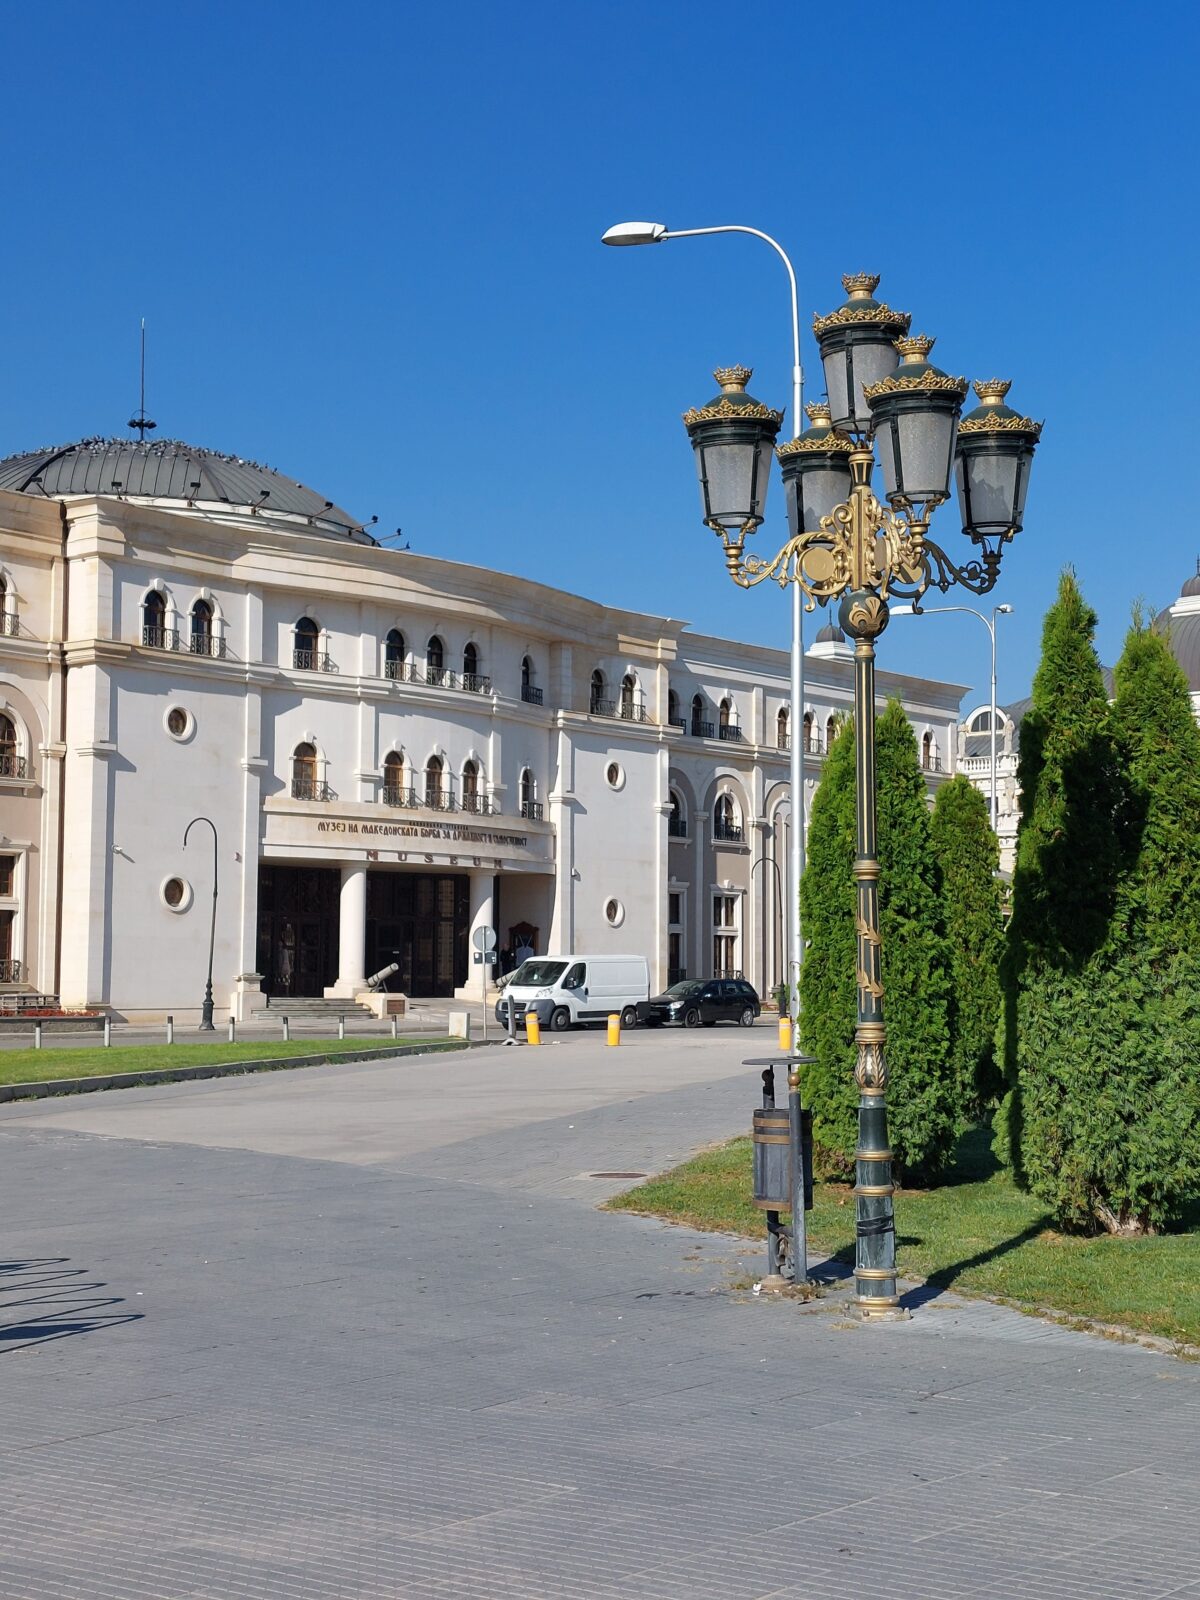 Visiter Skopje, la ville du kitch qui sonne faux